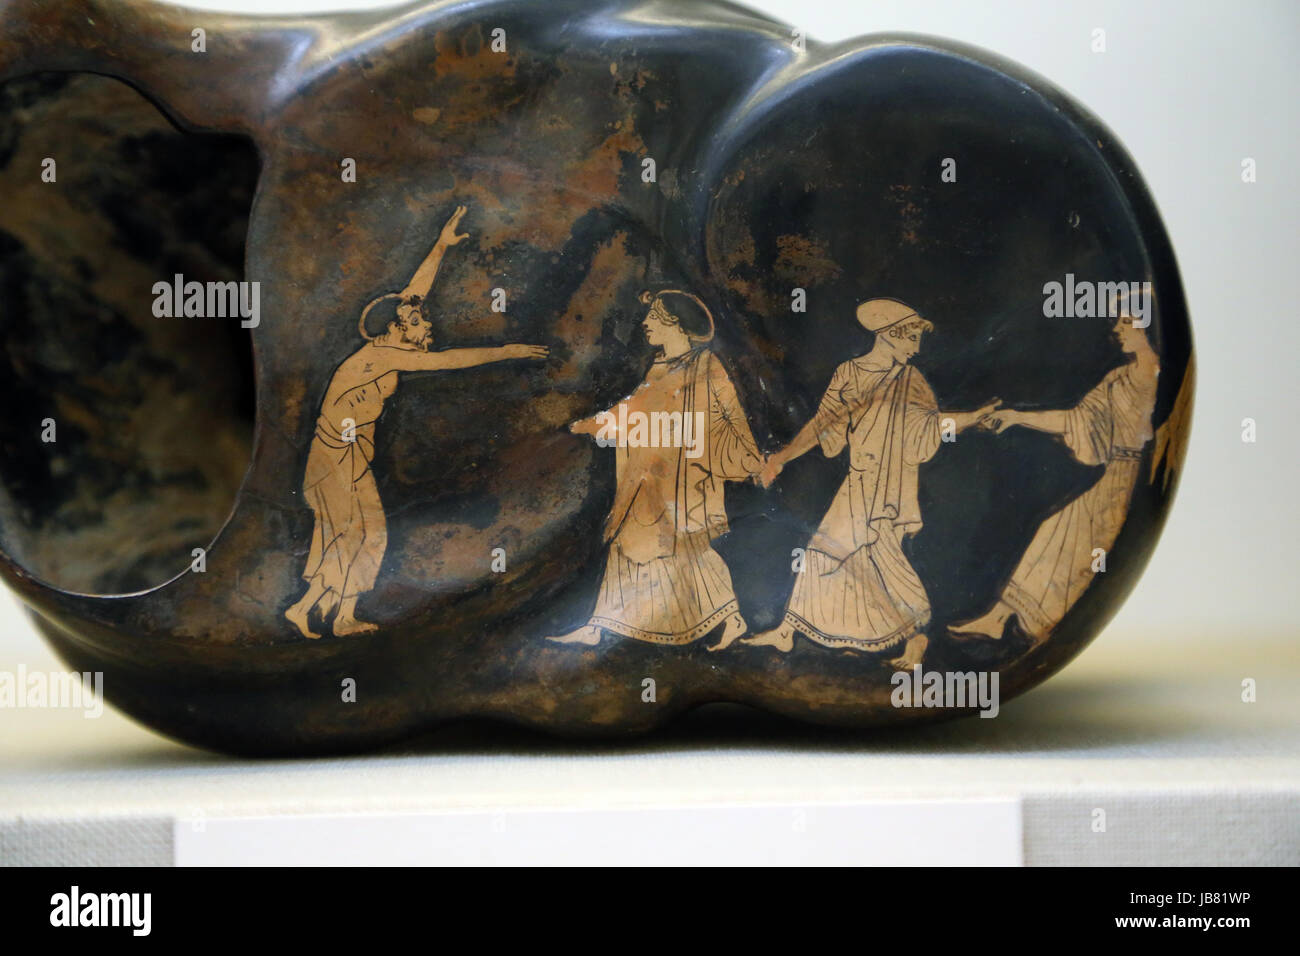 Rojo-figura astragalos mostrando danza dramática. Griego, Atenas 460-450 A.C. Sotades atribuido al pintor. Museo Británico. Londres. Foto de stock